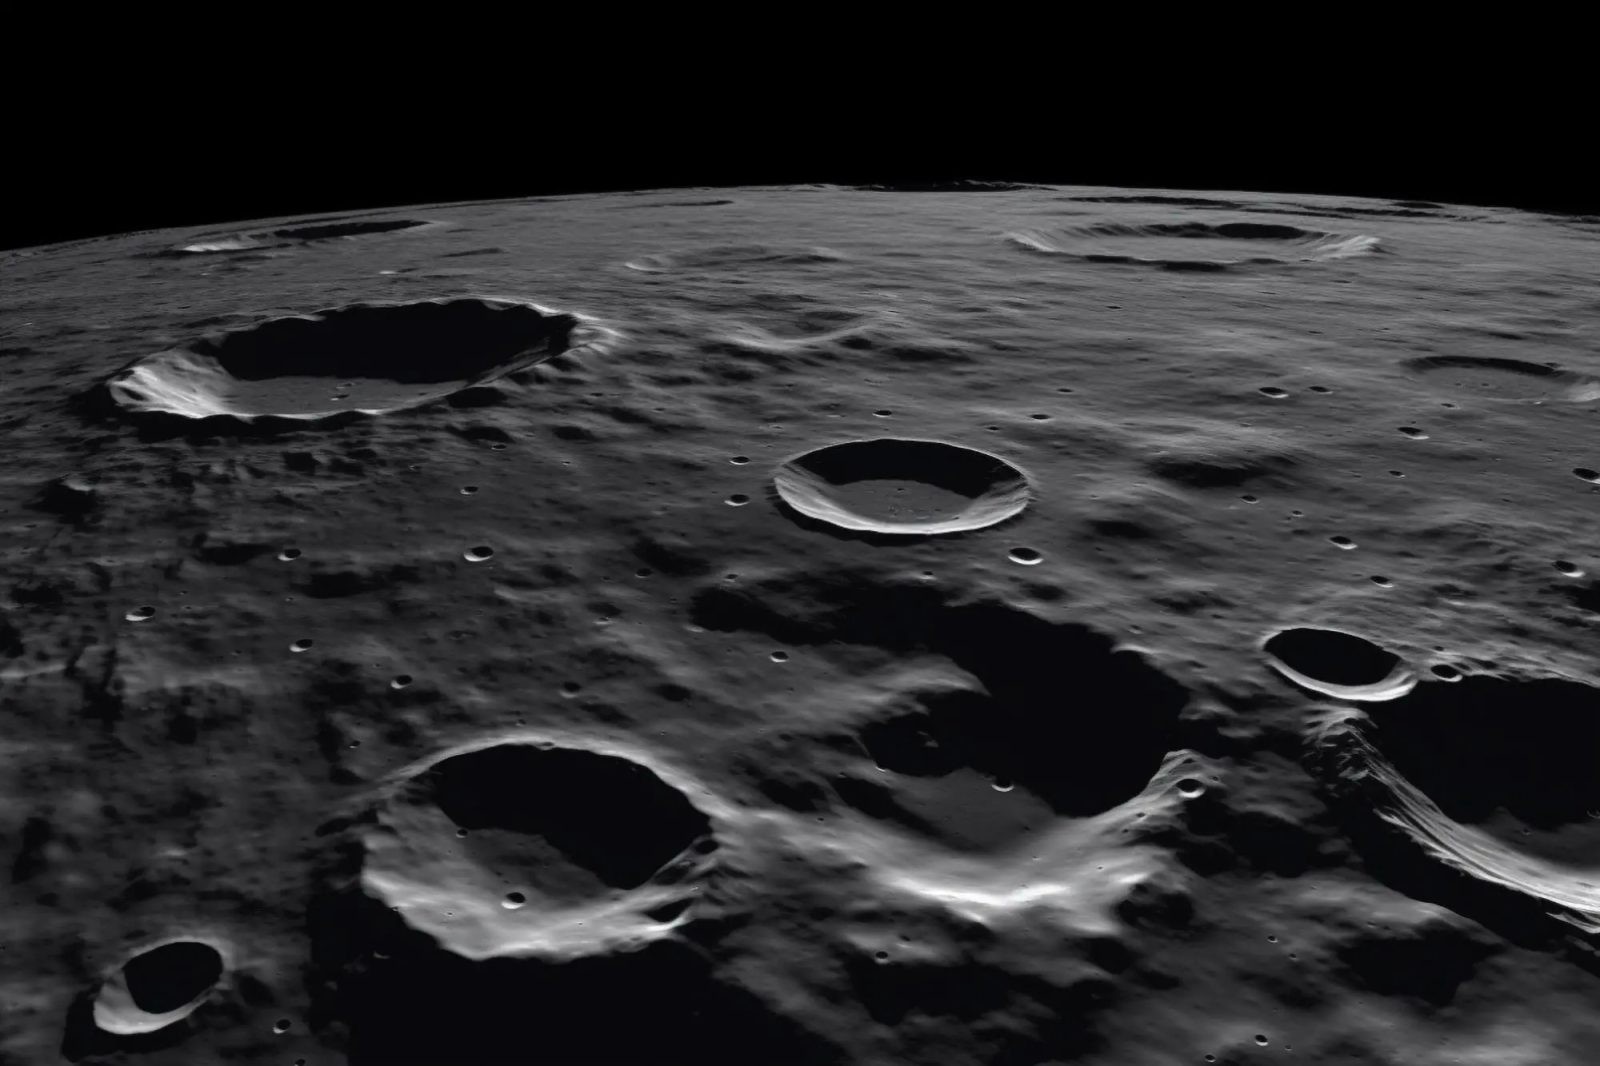 Księżyc nigdy nie był suchy. To odkrycie zmienia naszą wiedzę o historii wody na Księżycu